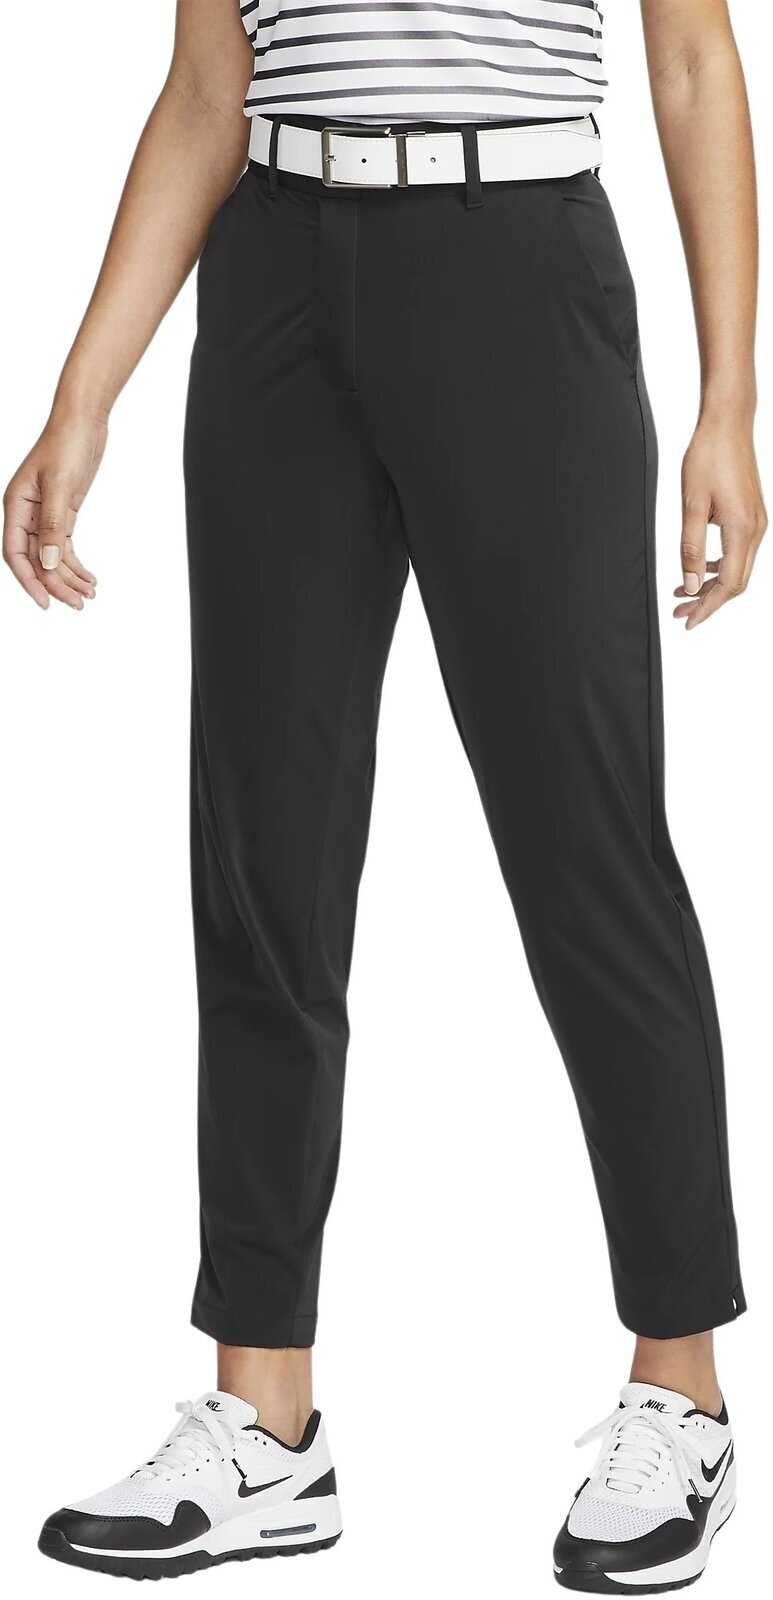 Nohavice Nike Dri-Fit Tour Womens Pants Black/White L